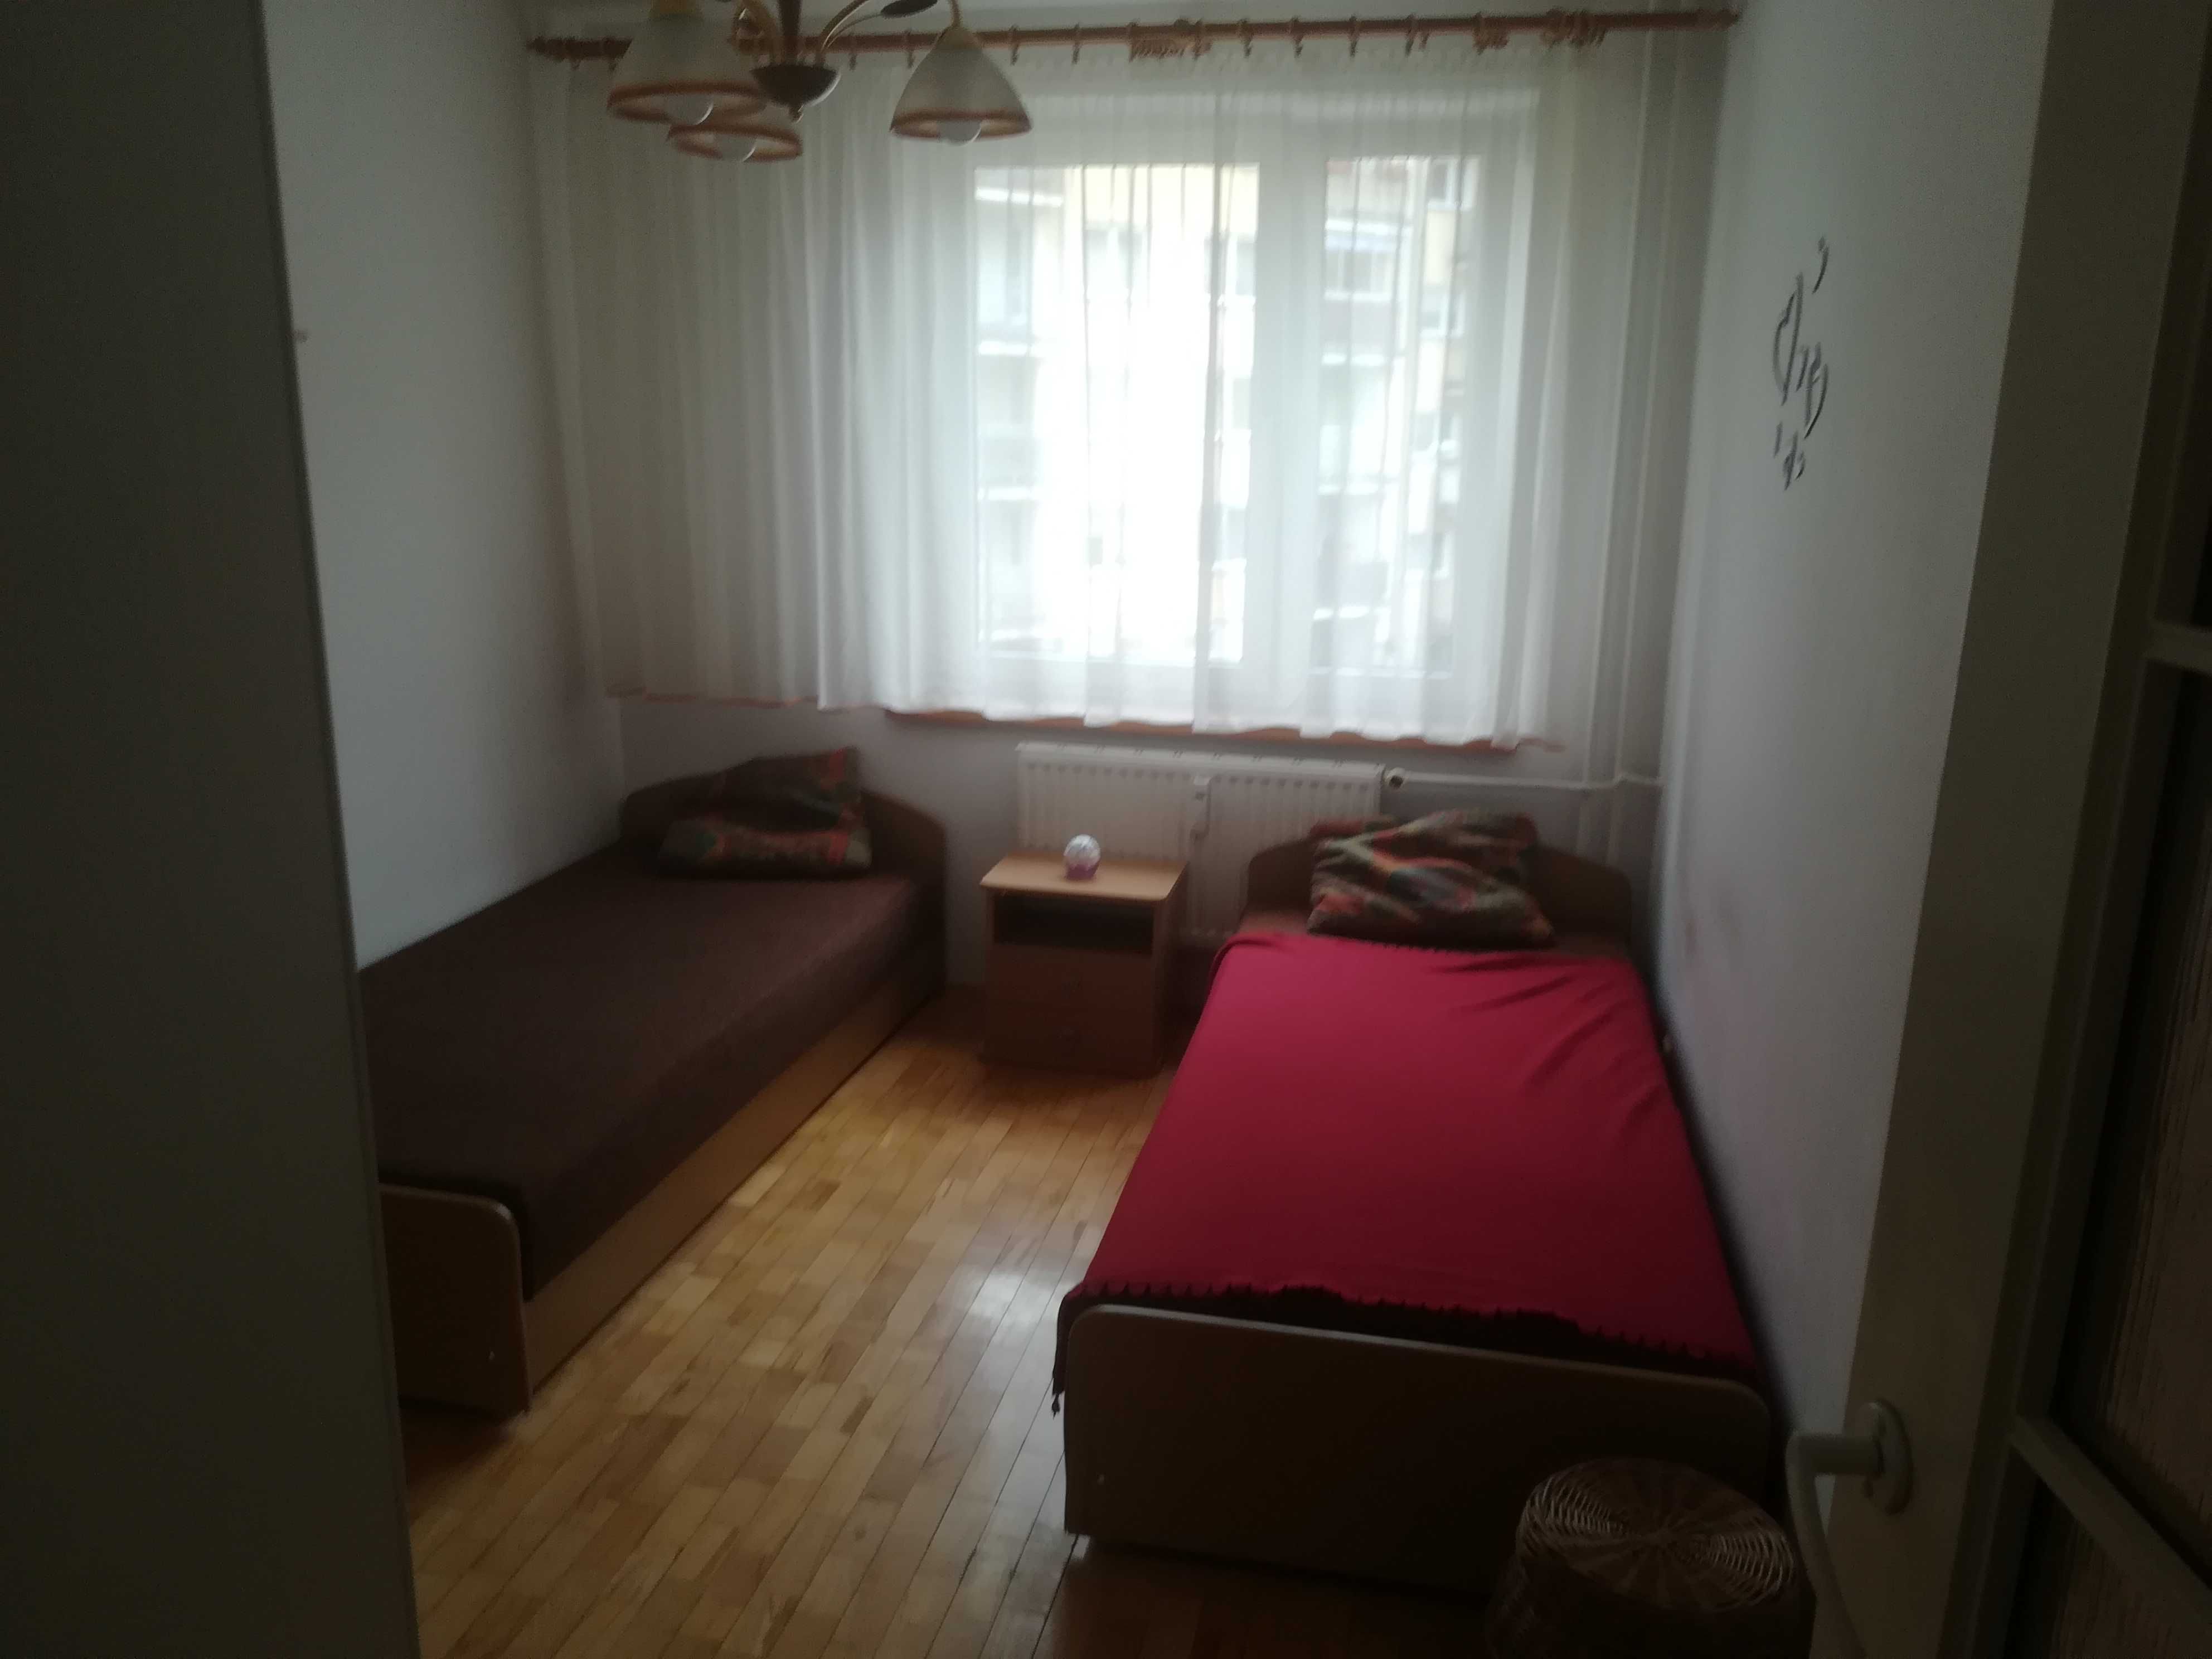 Mieszkanie Jaroty (3 pokoje) 2400zł z opłatami